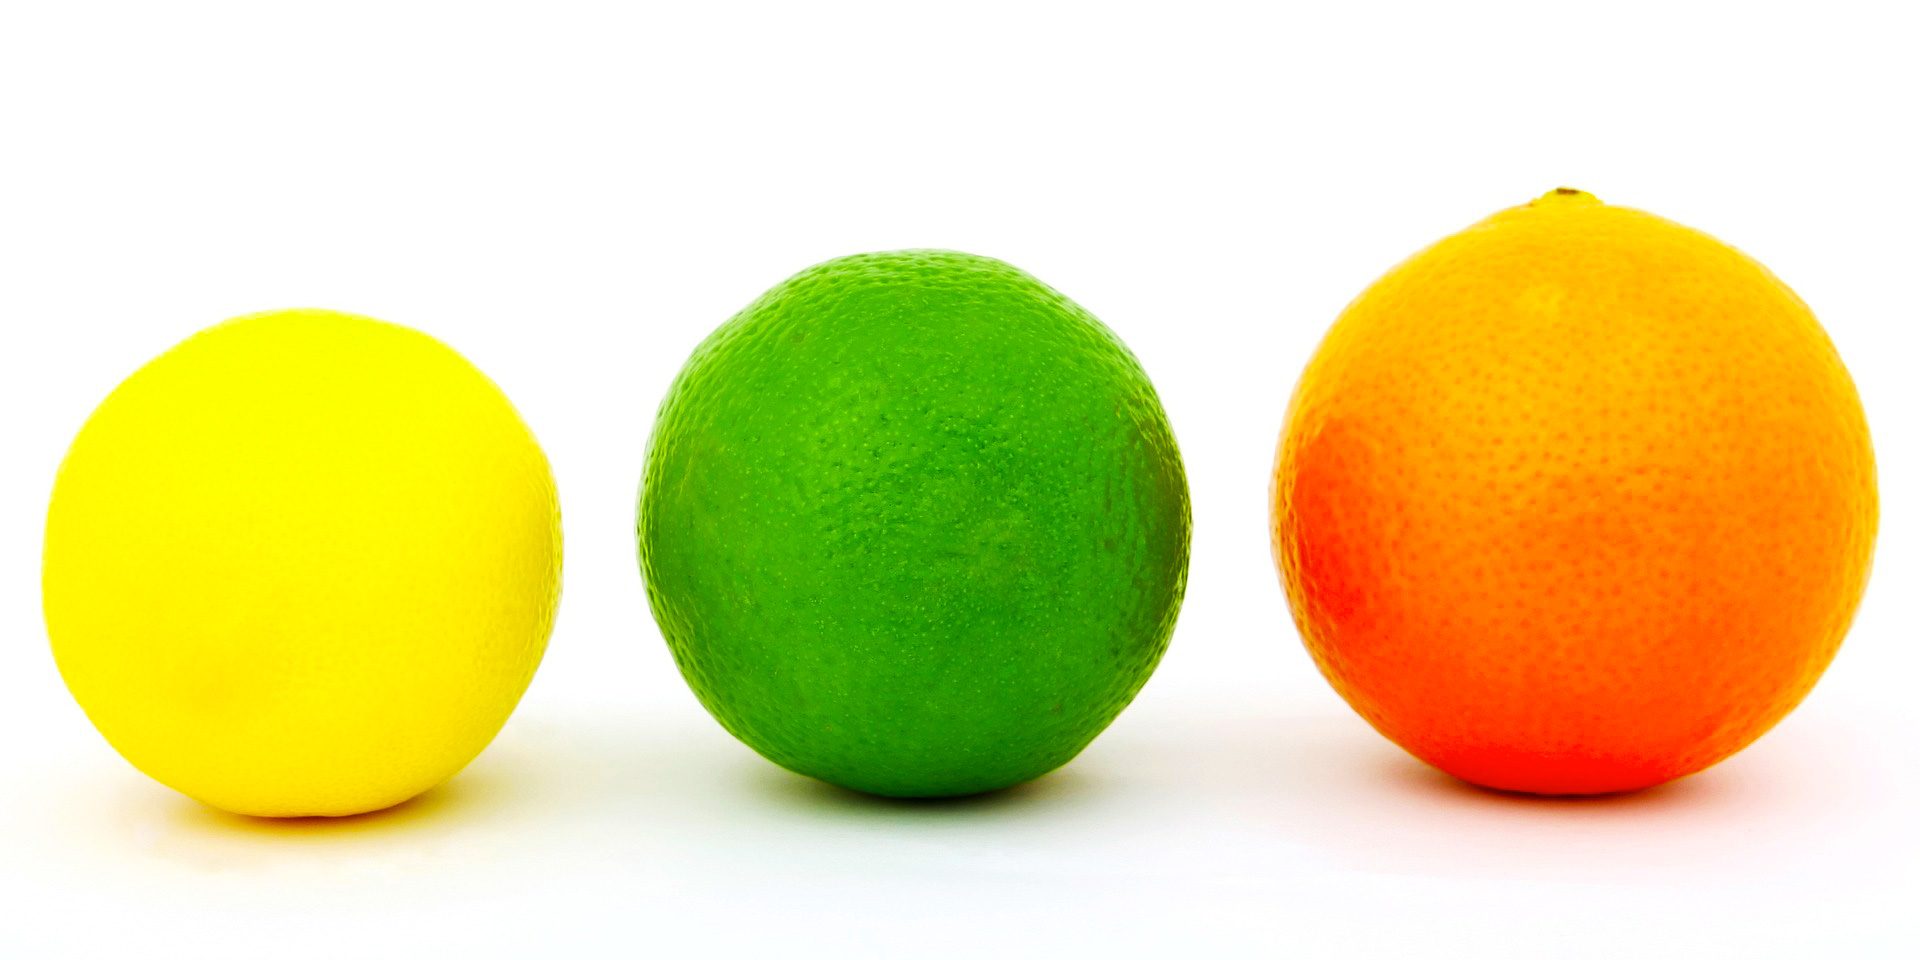 Three different citrus fruits